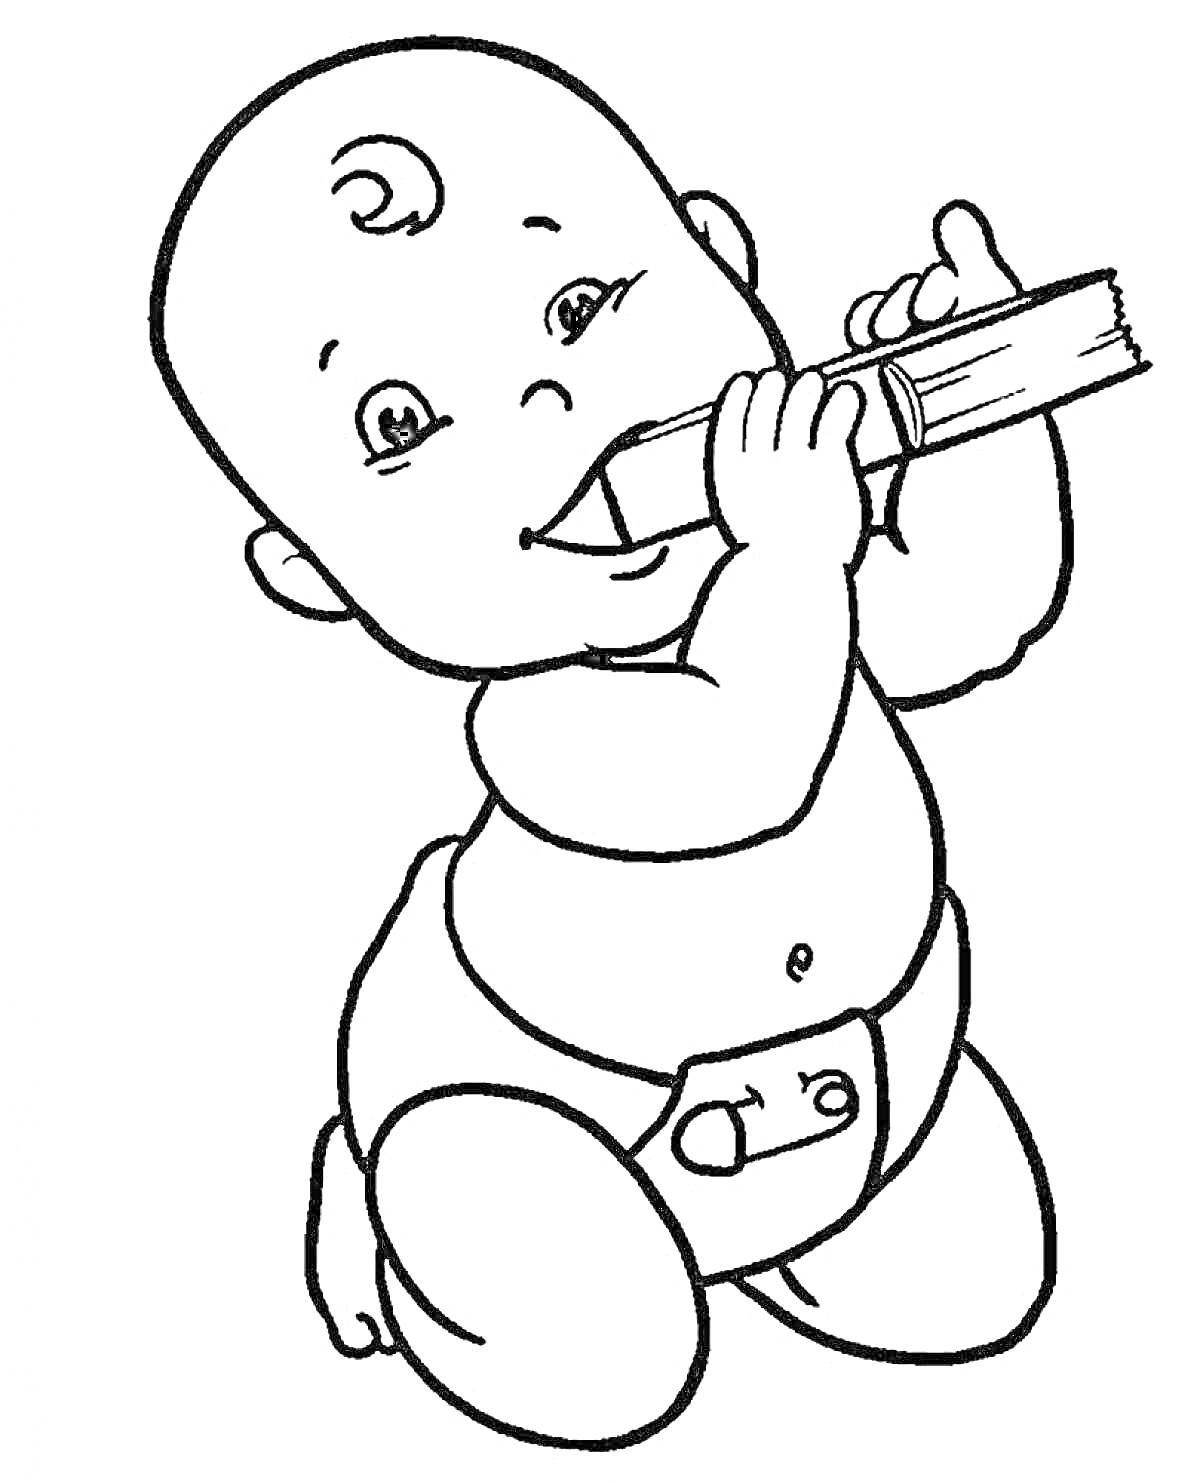 Малыш в подгузнике с курчавыми волосами играет с зубной щеткой